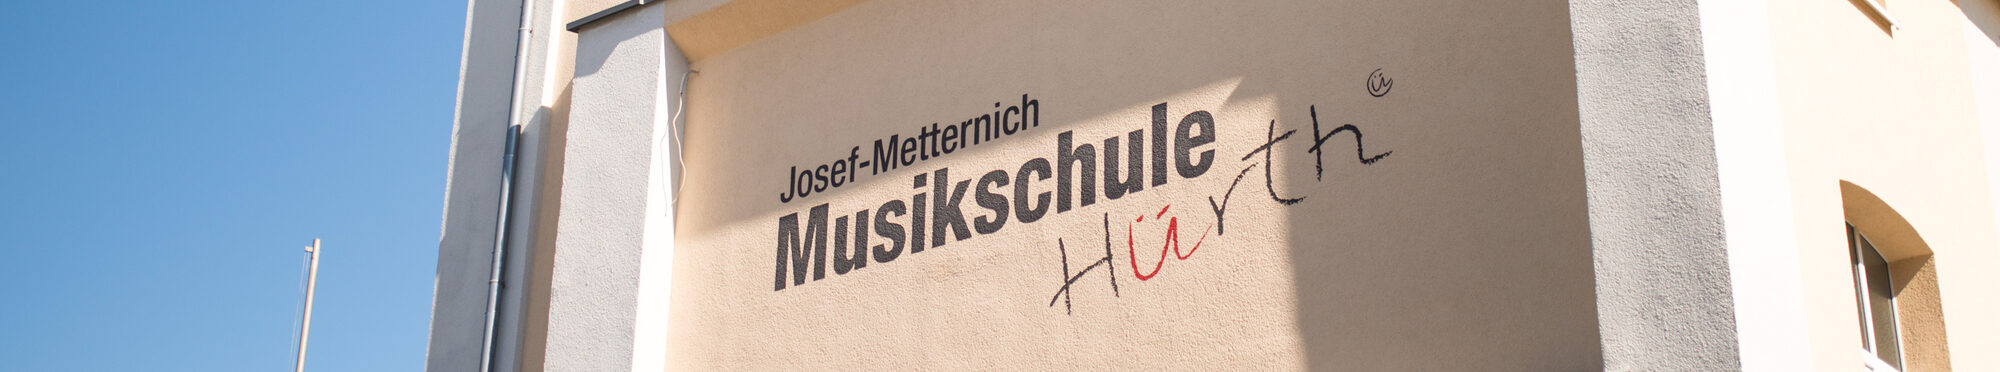 Josef Metternich-Musikschule